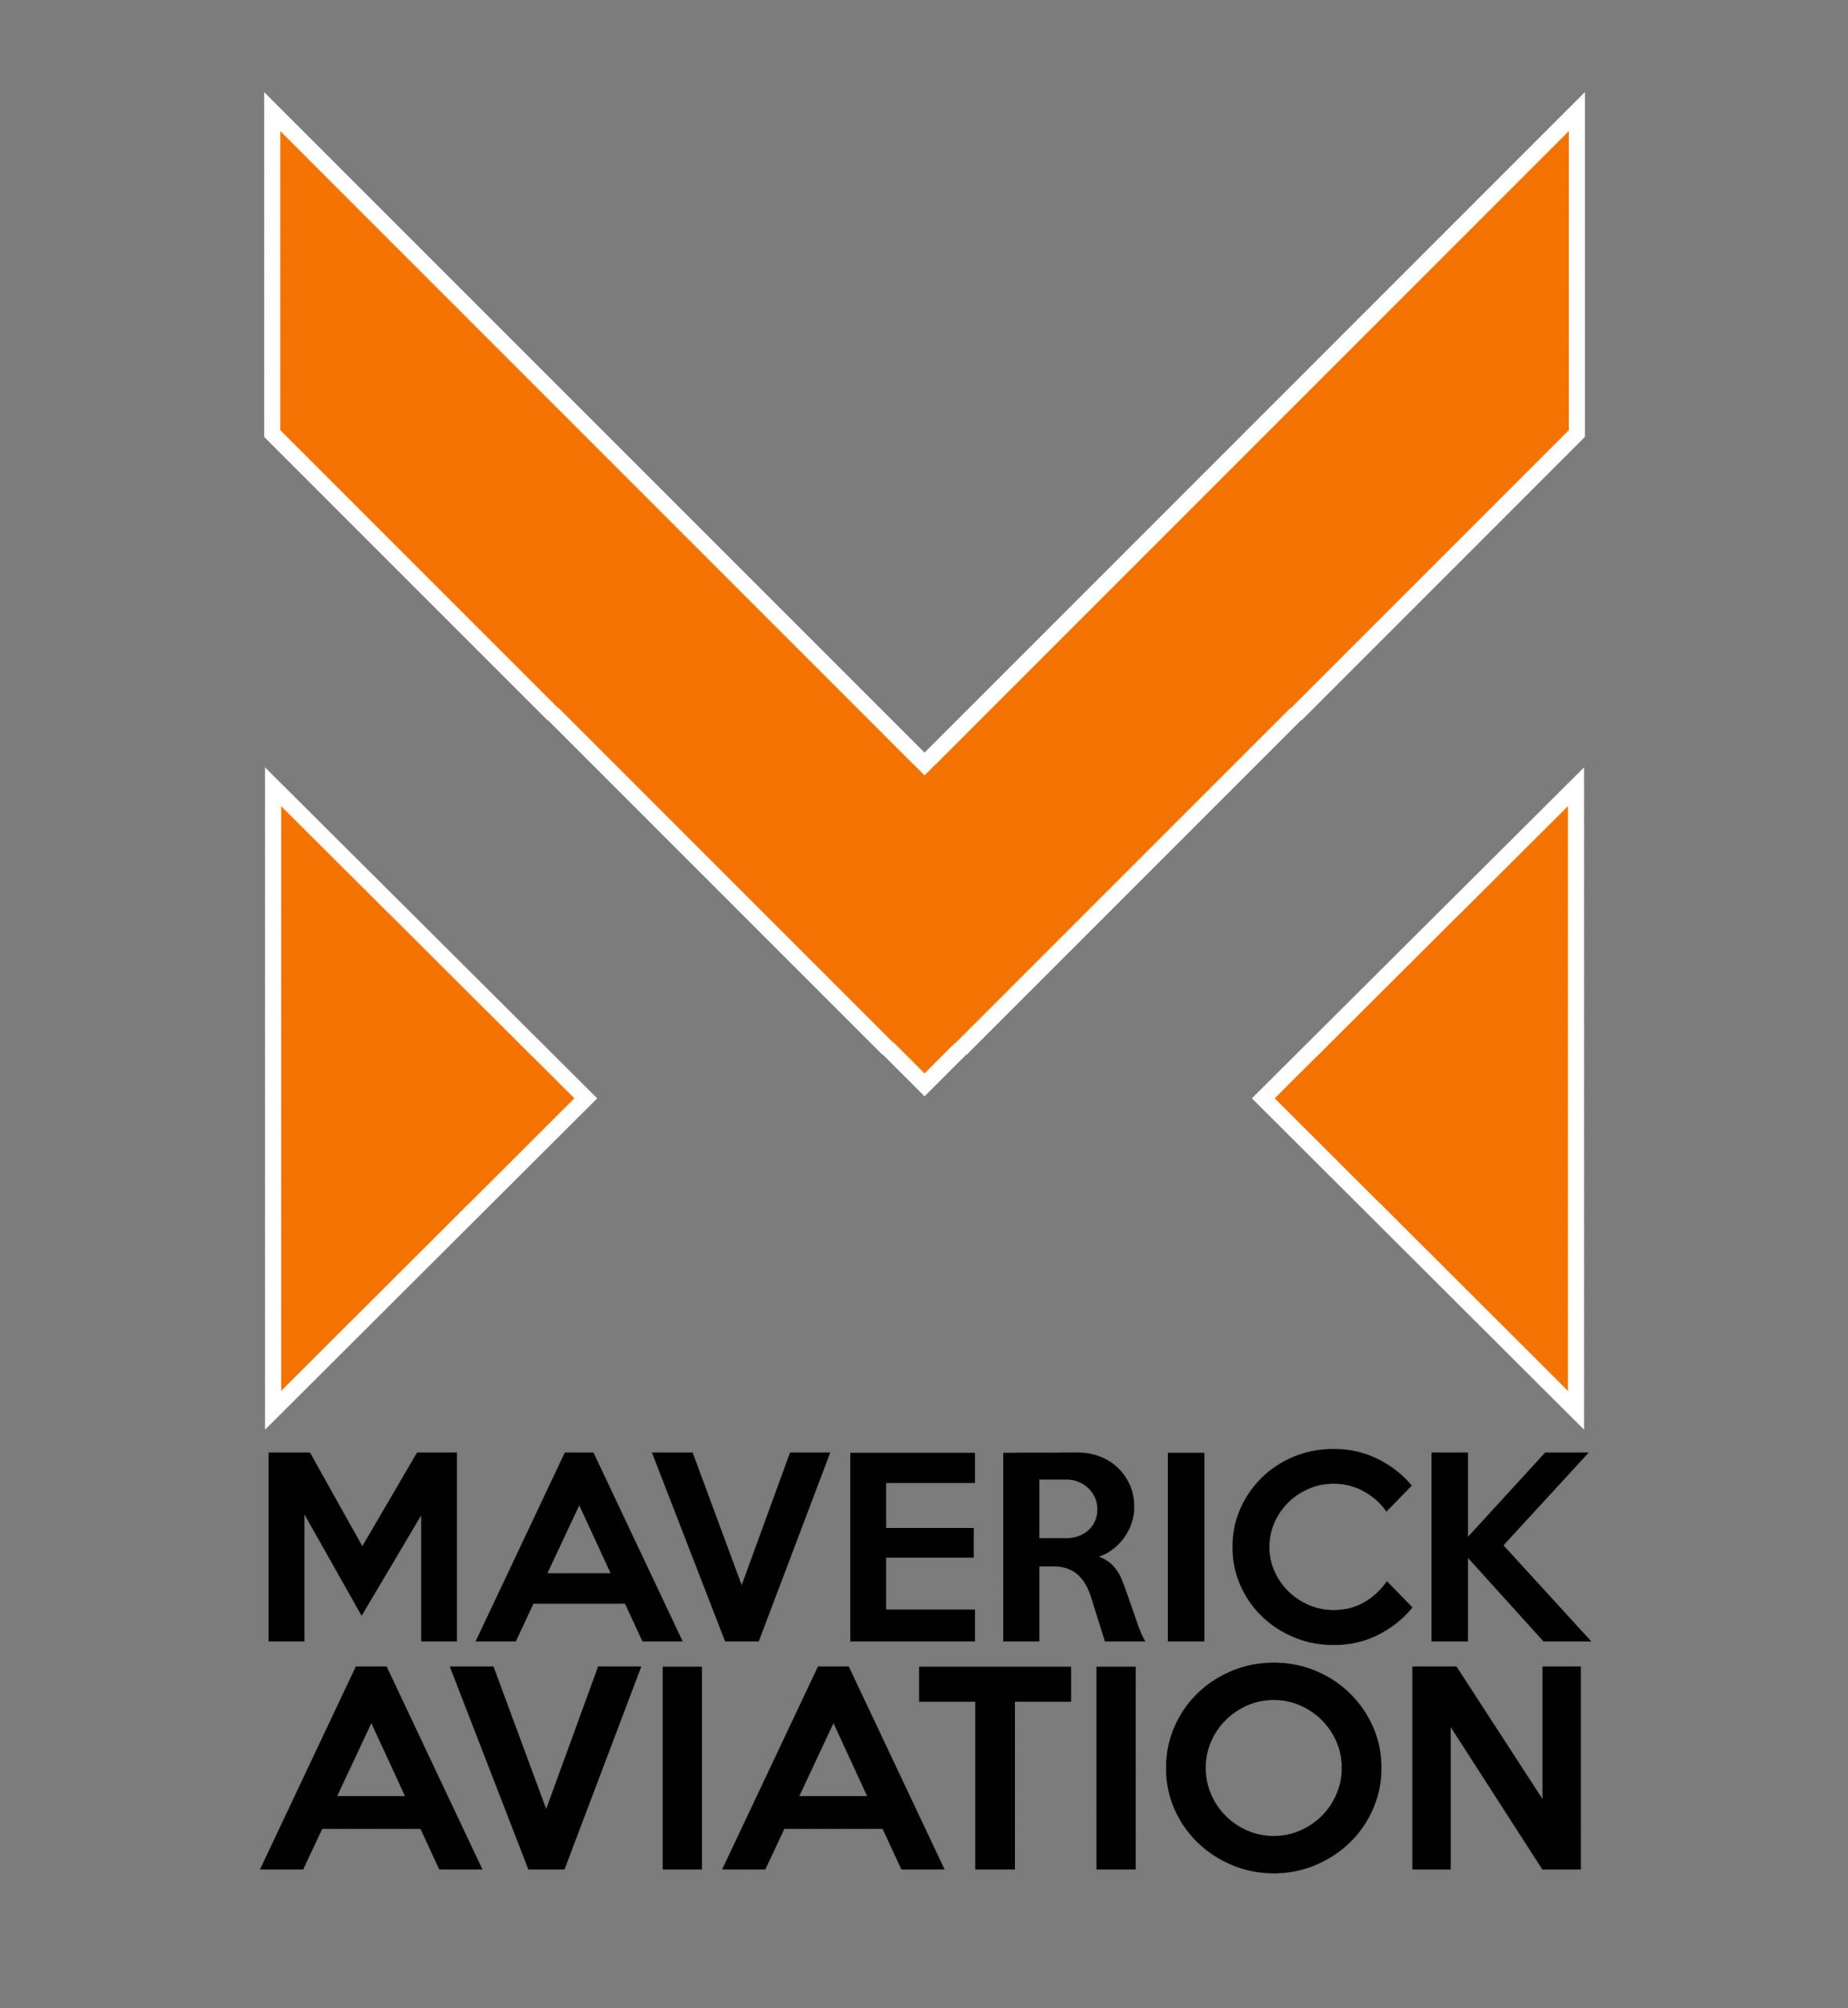 Maverick - Maverick Logan Paul Logo Transparent PNG - 1920x1920 - Free  Download on NicePNG